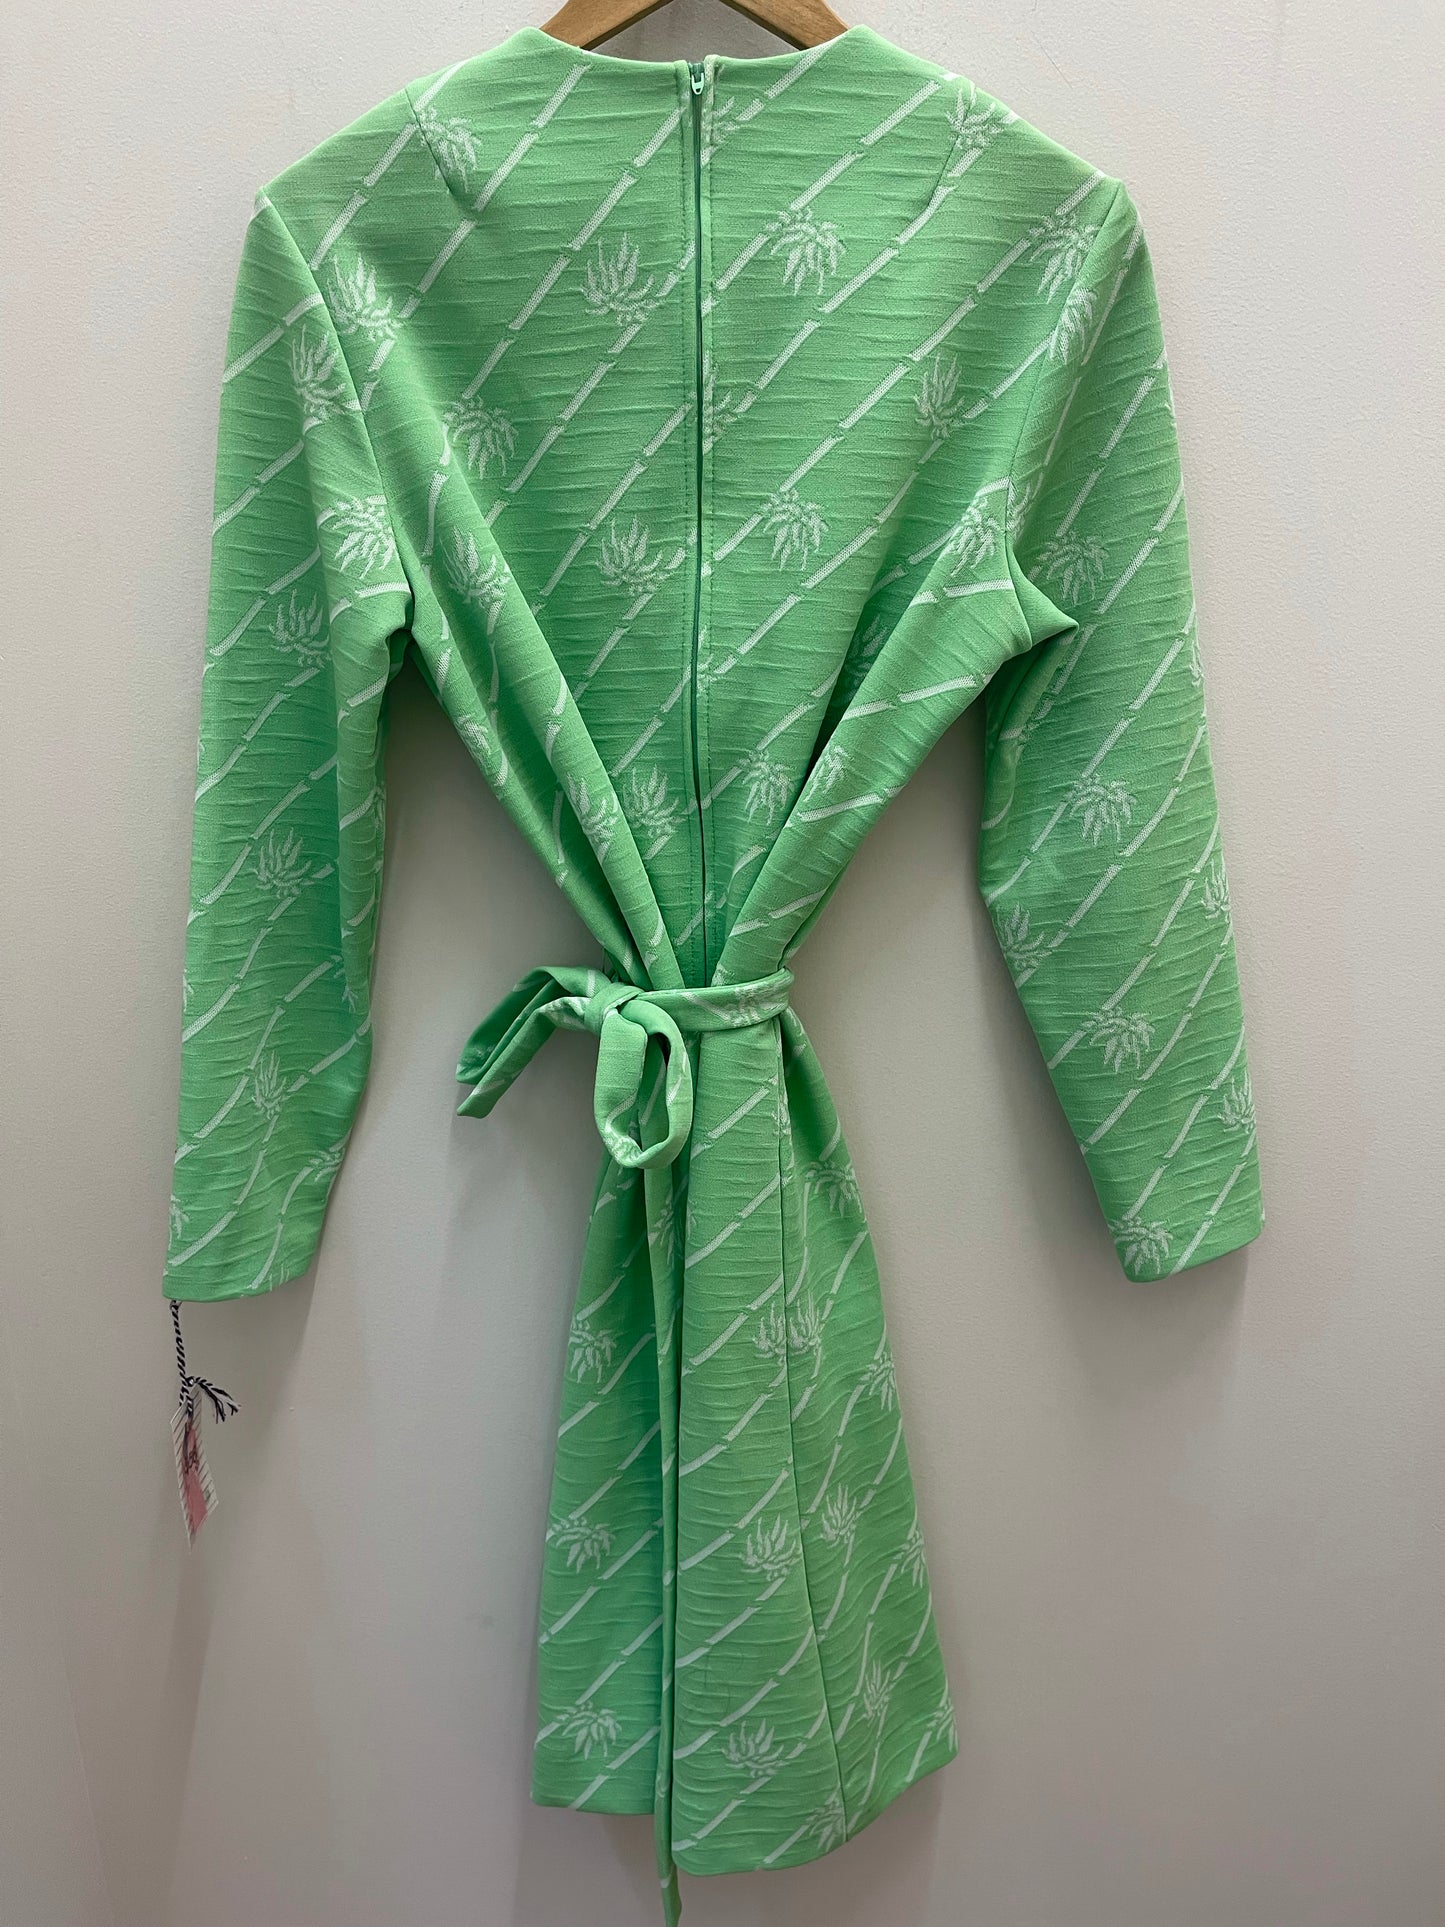 Palm Beach green dress